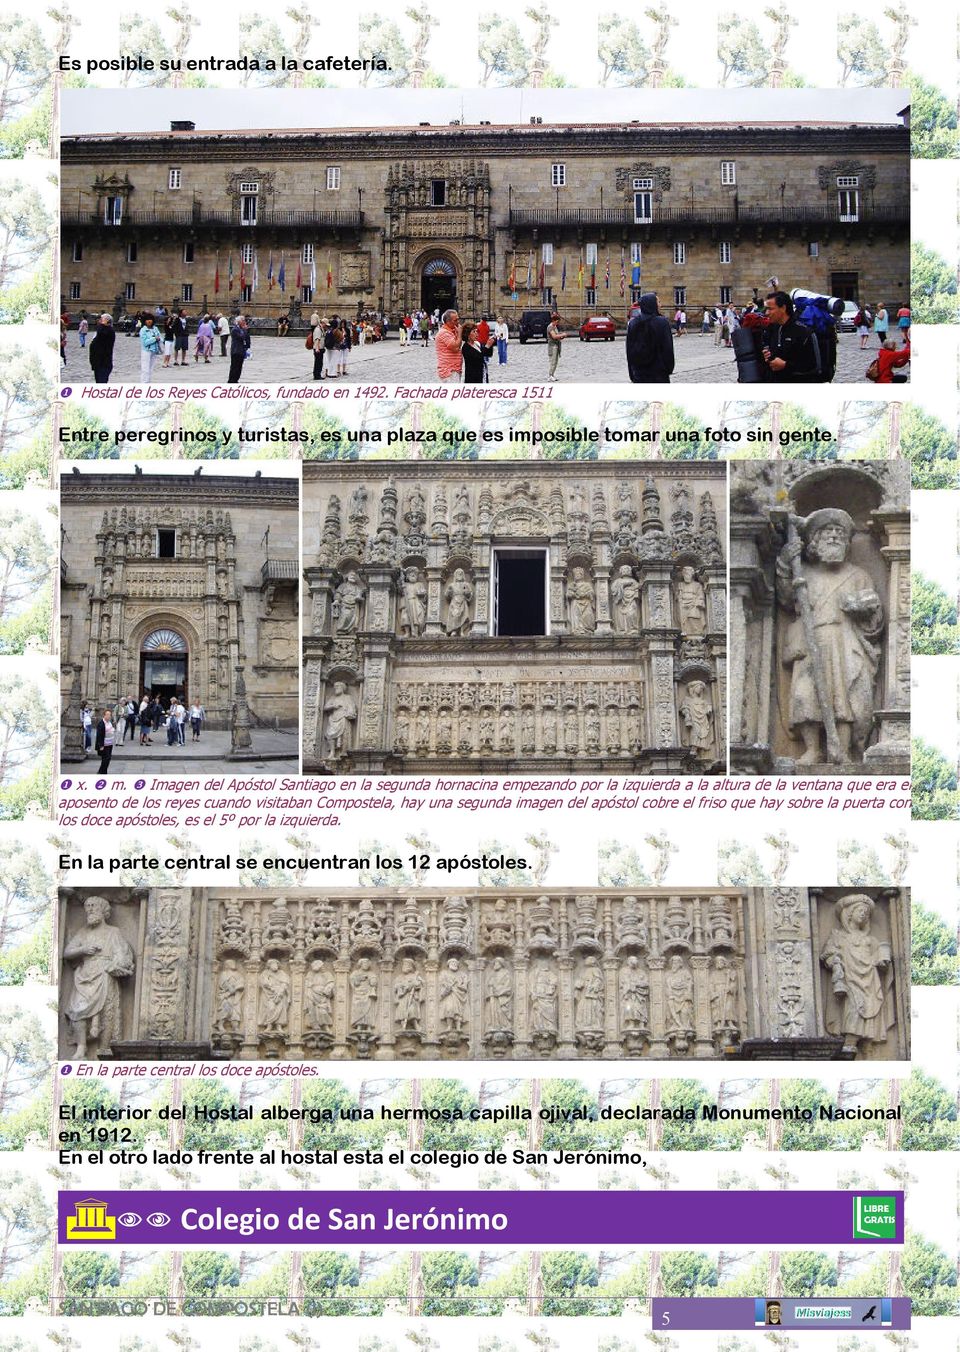 ❸ Imagen del Apóstol Santiago en la segunda hornacina empezando por la izquierda a la altura de la ventana que era el aposento de los reyes cuando visitaban Compostela, hay una segunda imagen del